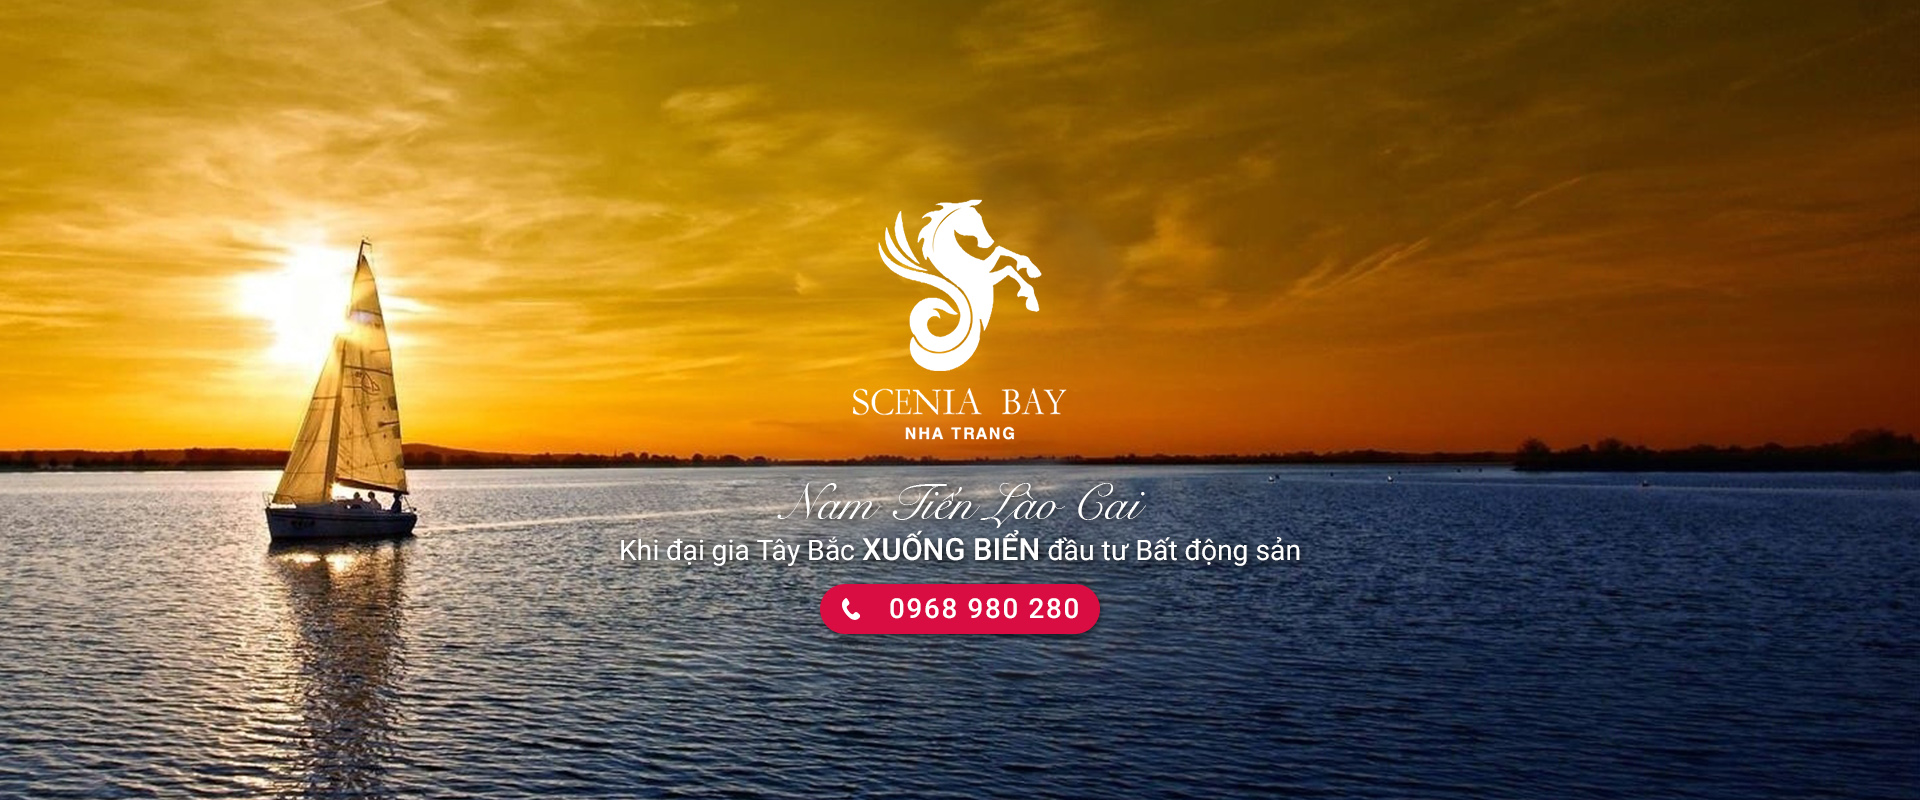 Scenia Bay Nha Trang